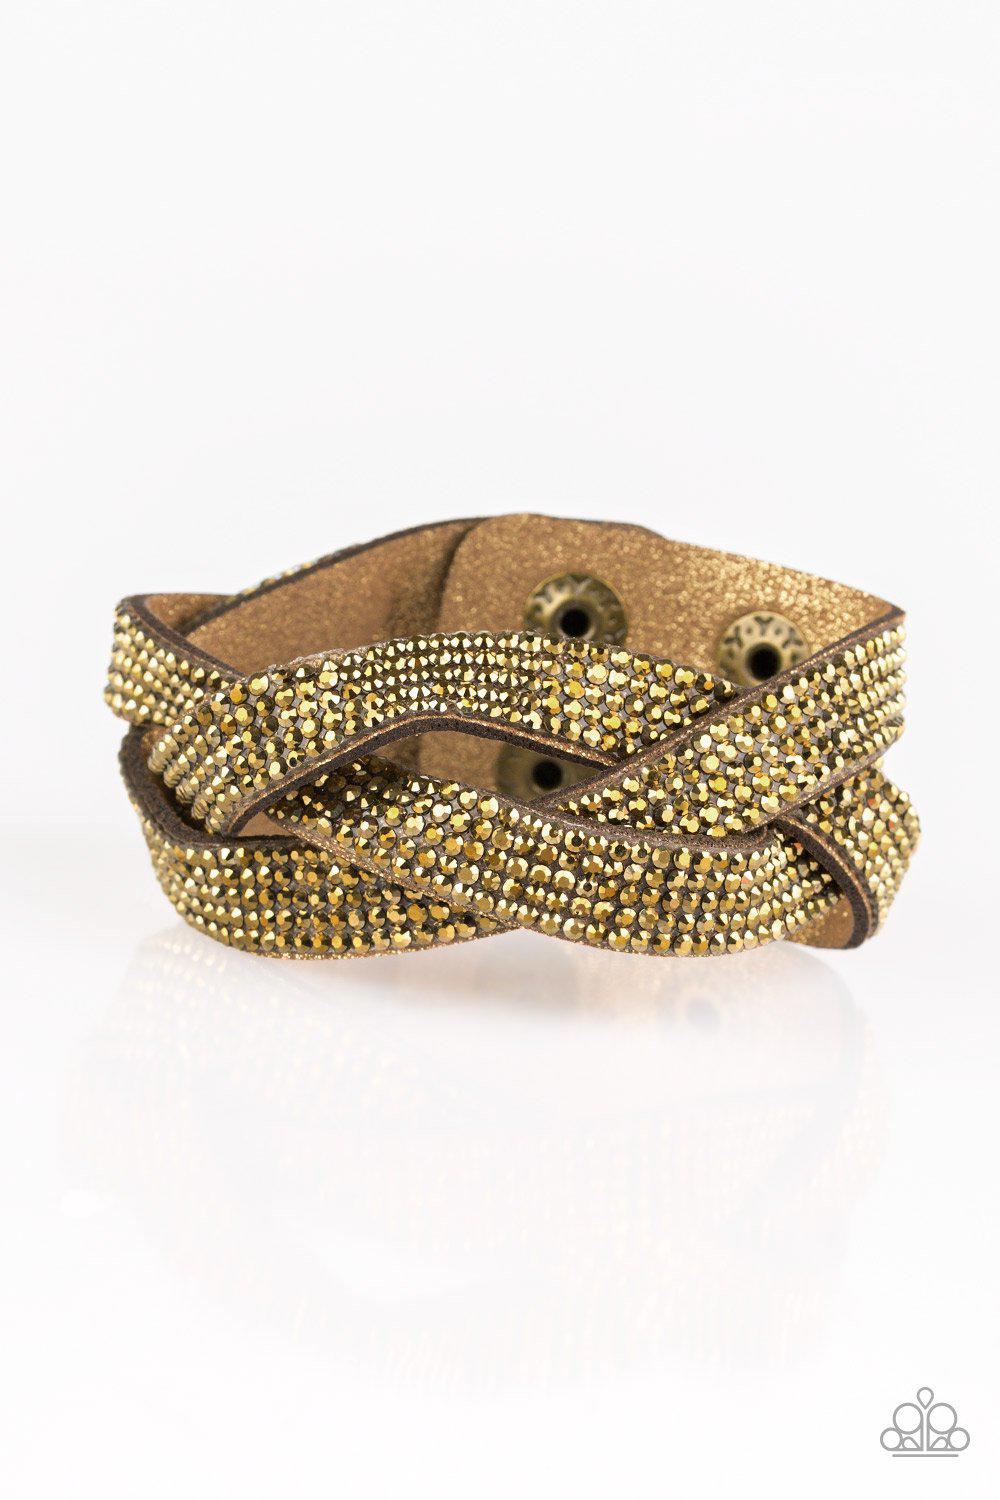 Jewelz Classy Colorful Bracelet for Women and Girls - Jewelz